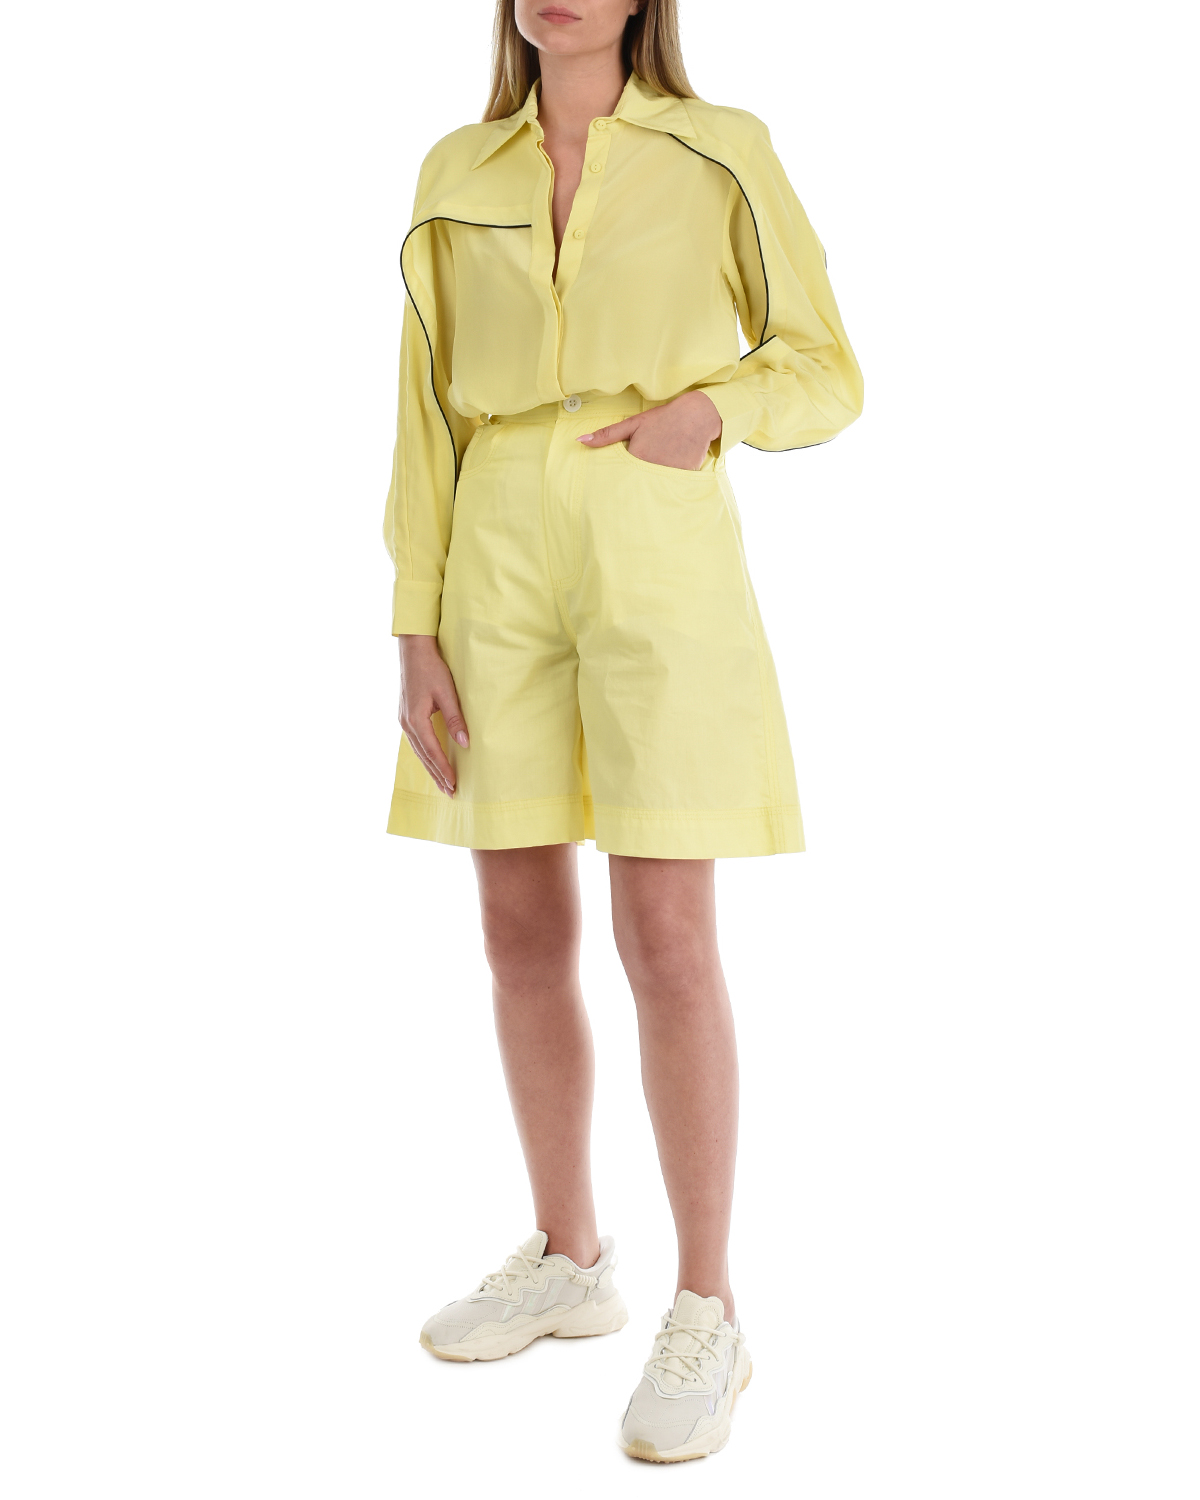 Шелковая блуза лимонного цвета LOVE BIRDS, размер 40 - фото 3